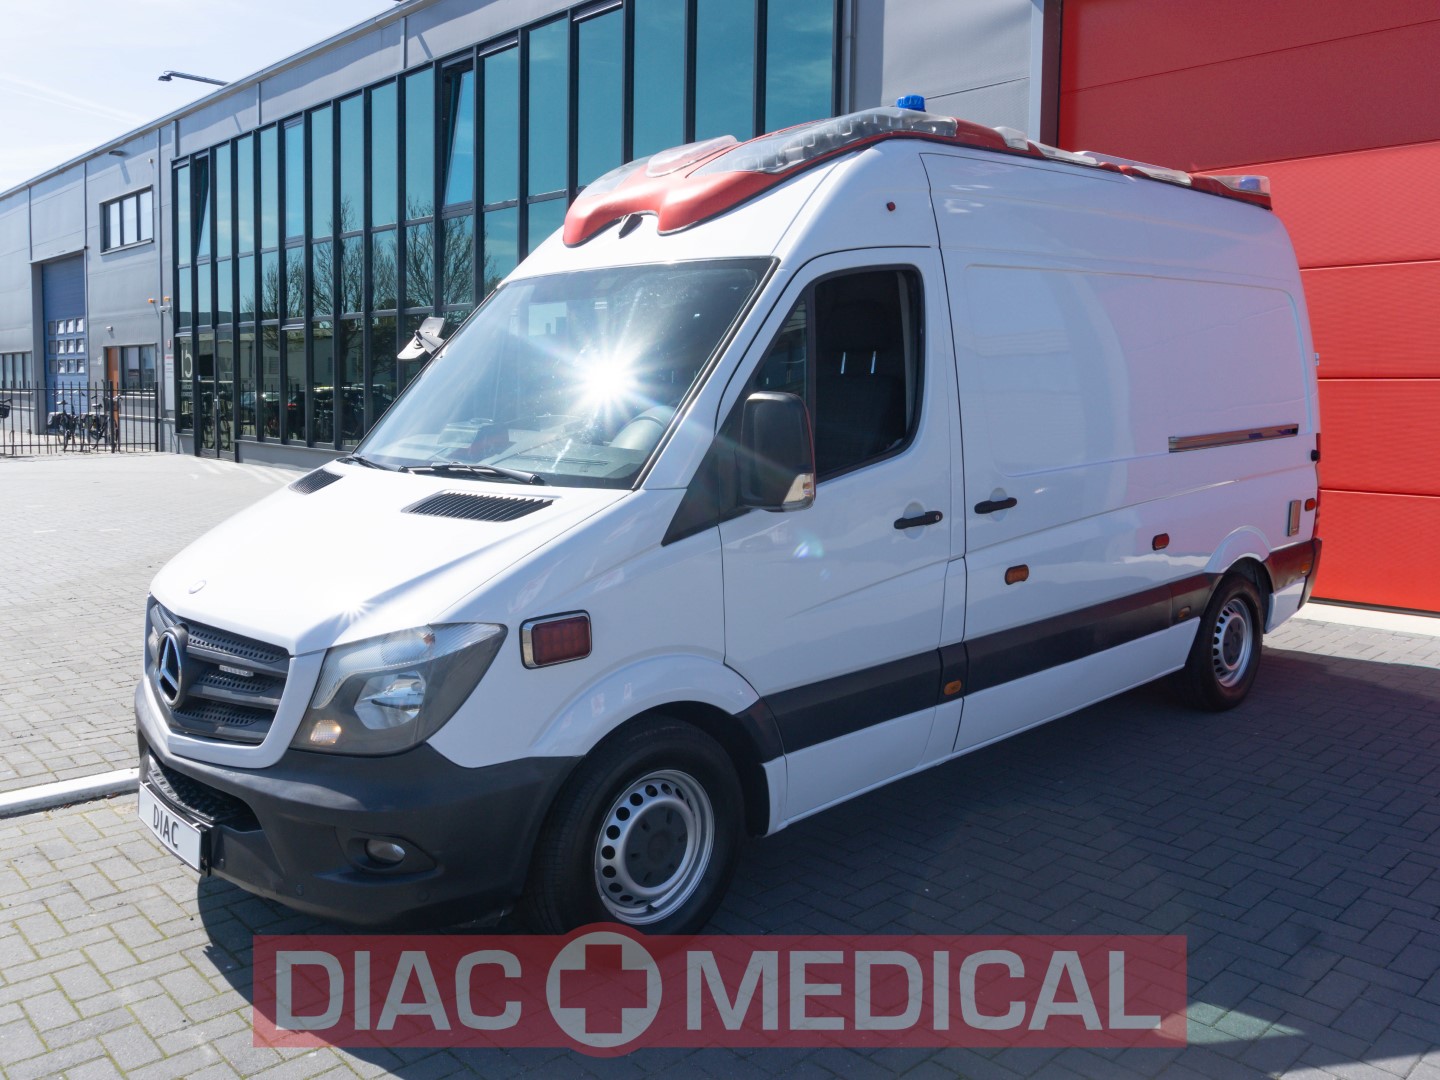 Mercedes-Benz Sprinter 319 CDI Diesel Ambulance L2H2 – 2015 (22095)